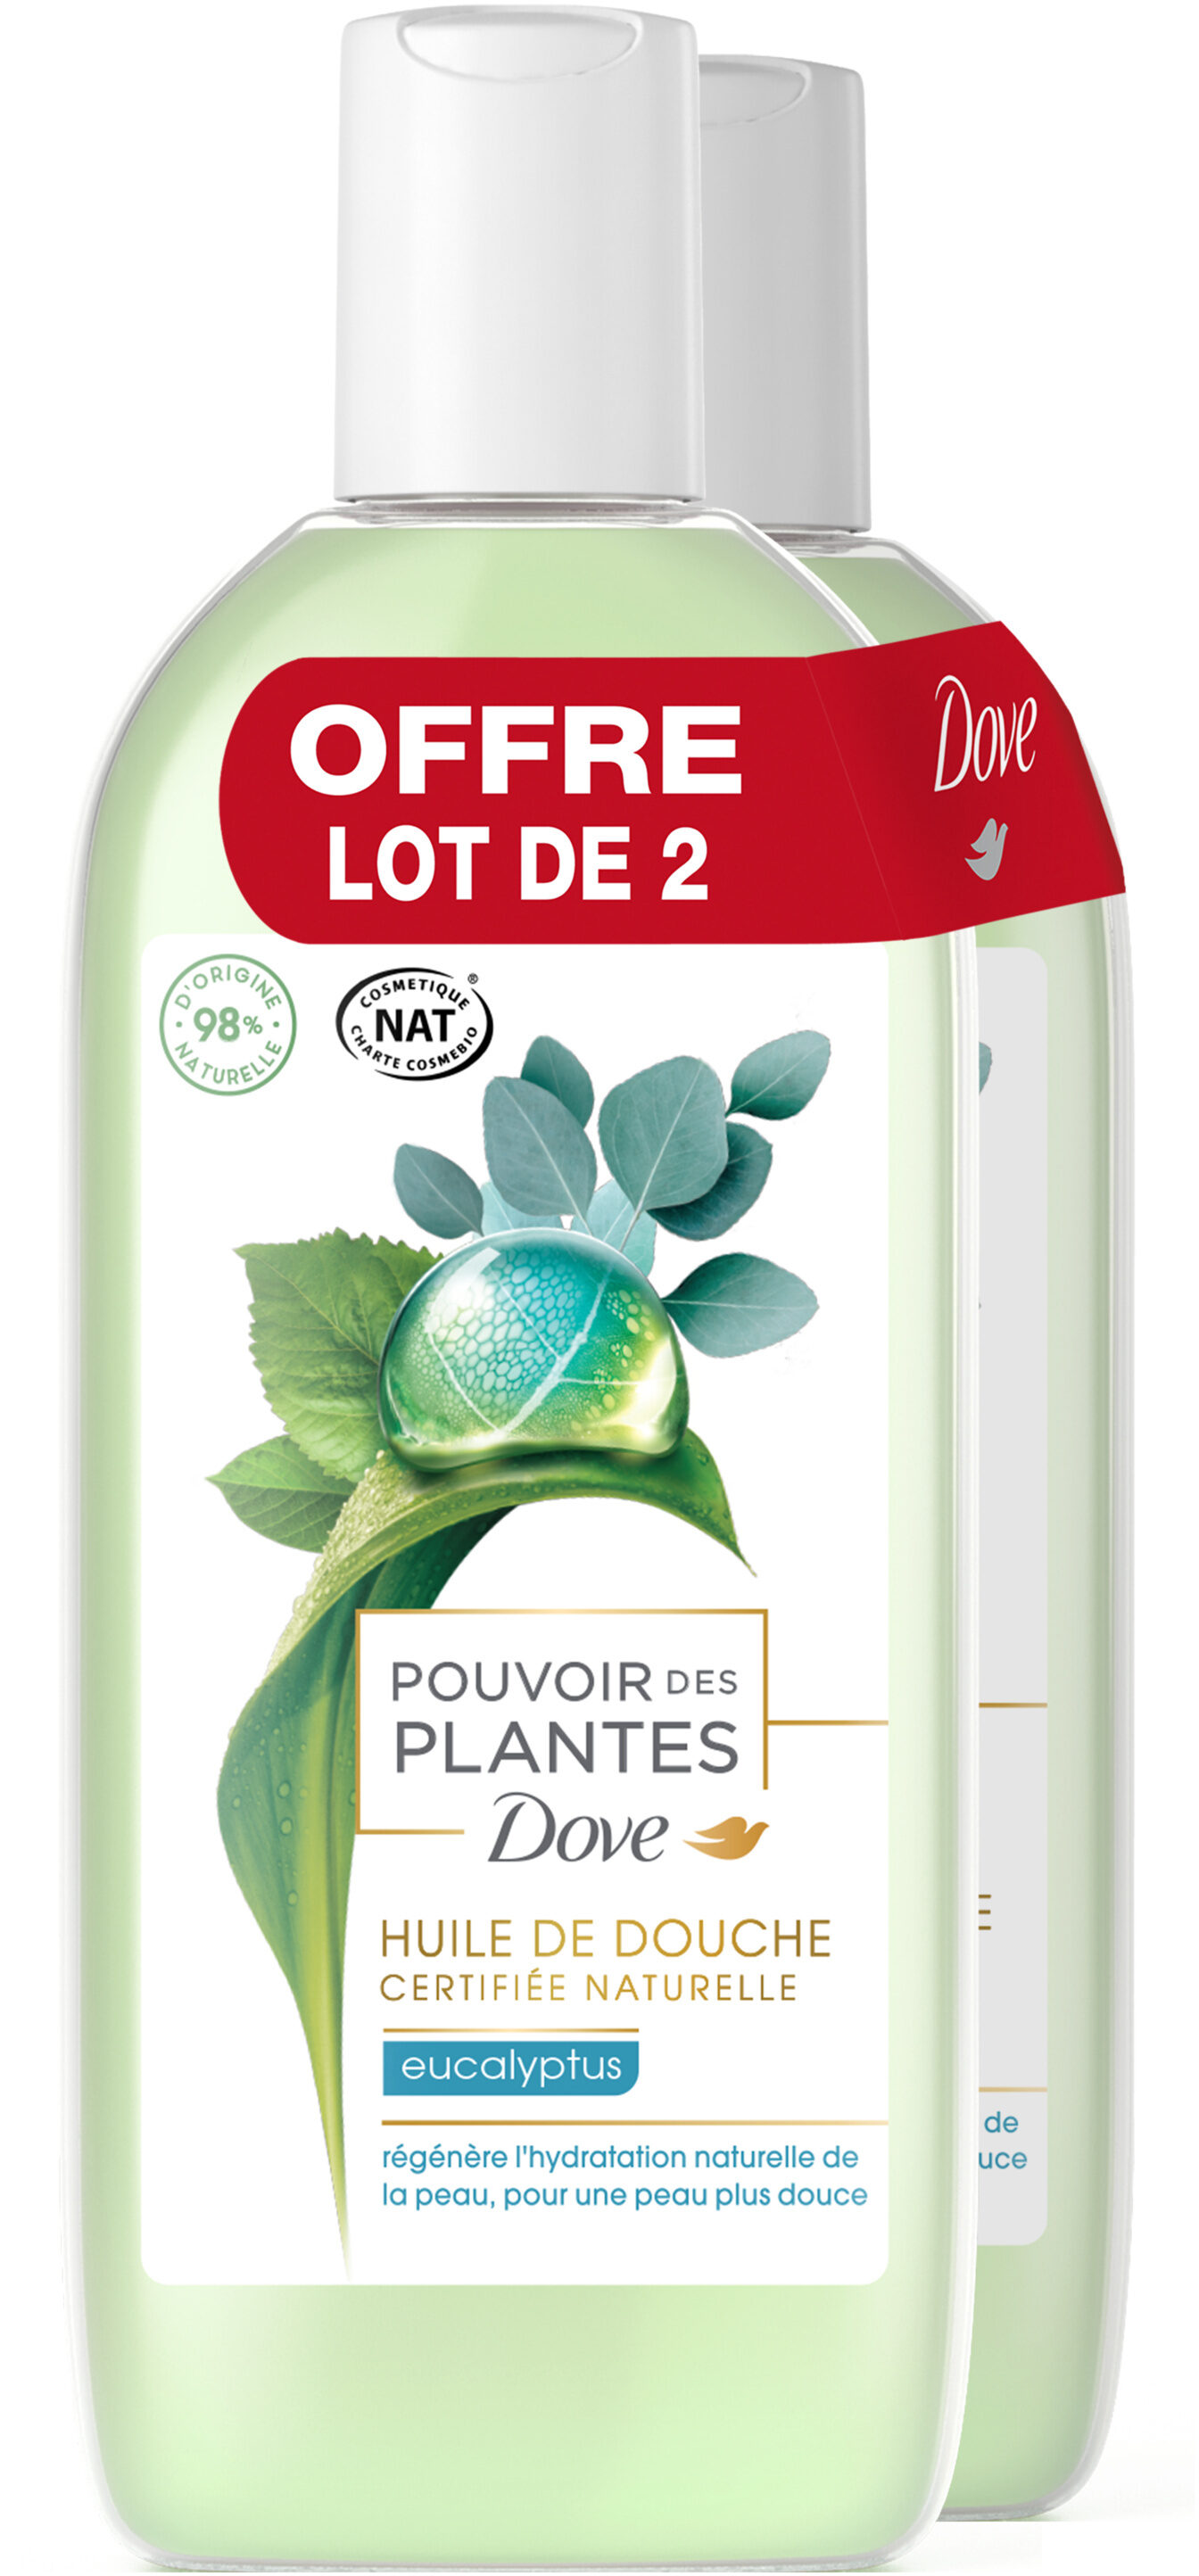 DOVE Gel Douche Pouvoir des Plantes Eucalyptus 2x250ml - Product - fr